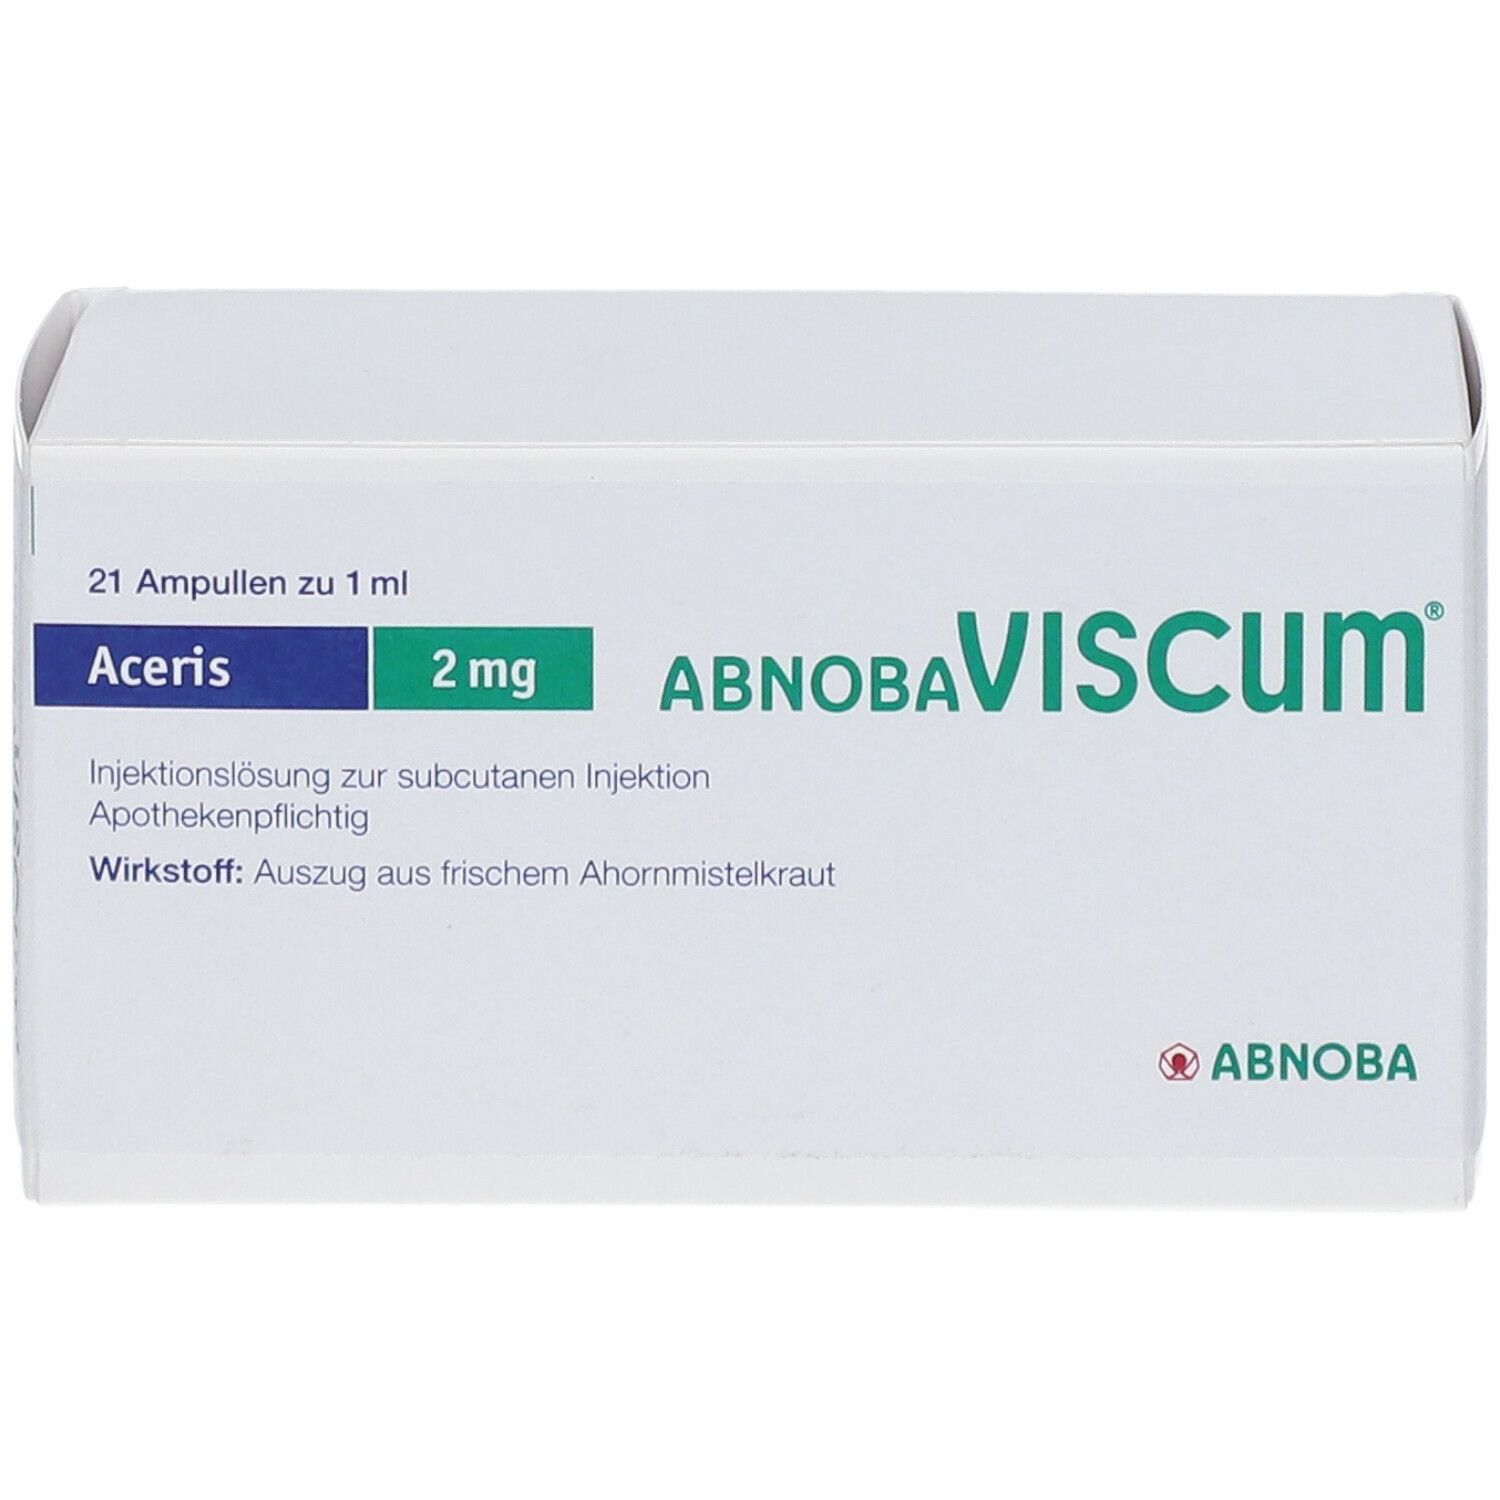 abnobaVISCUM® Aceris 2 mg Ampullen